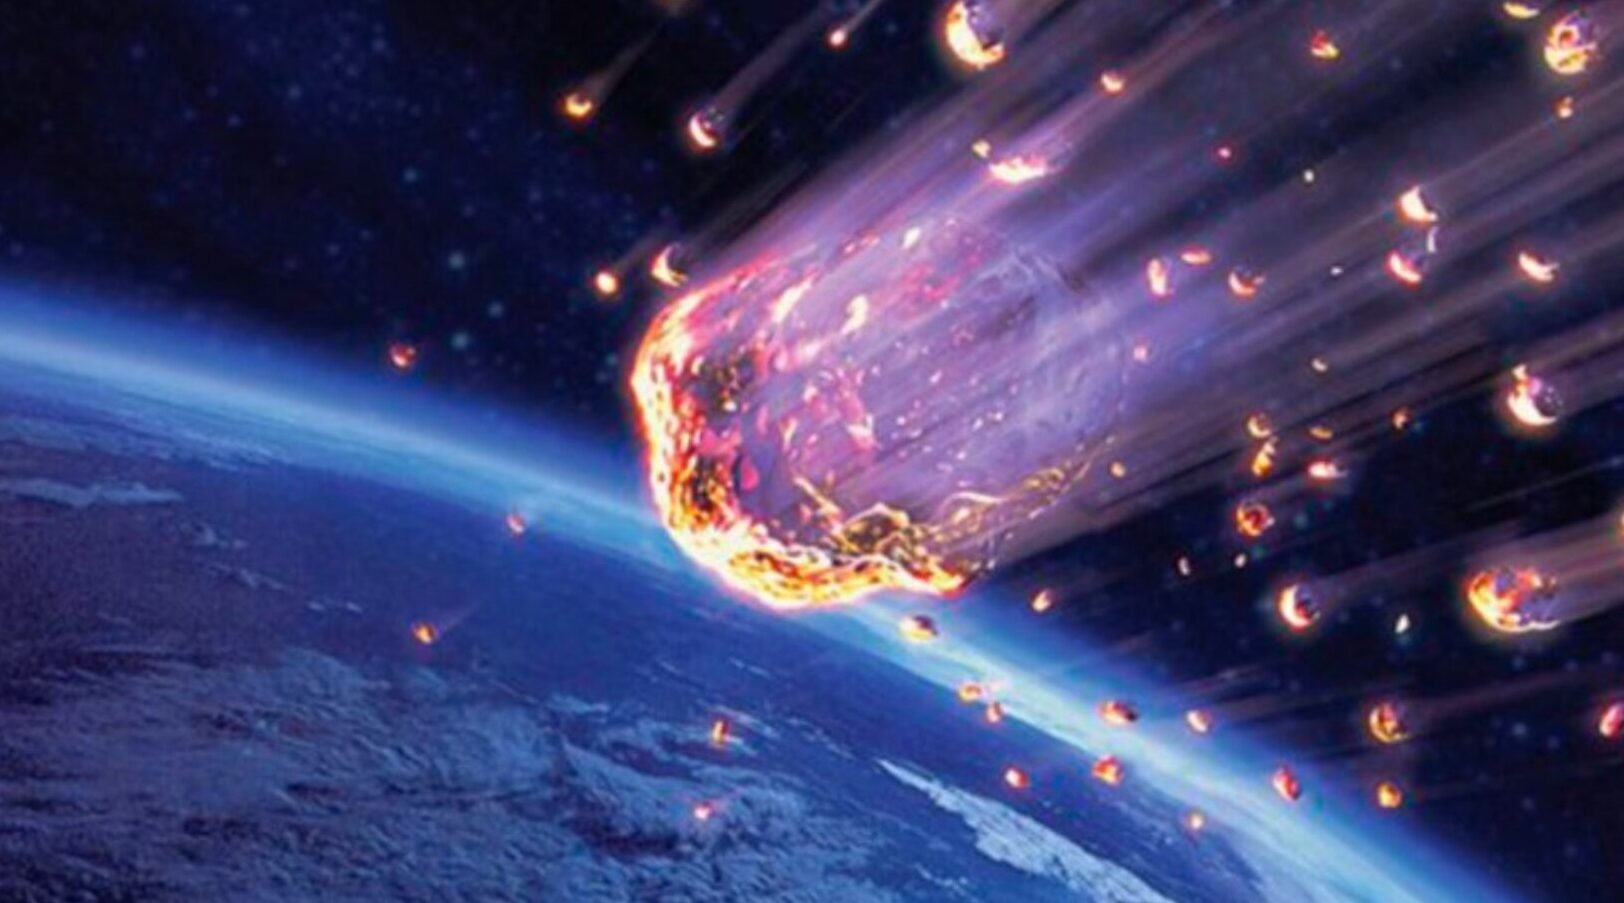 El extraño meteoro de Tunguska, por Rafael Sylva Moreno